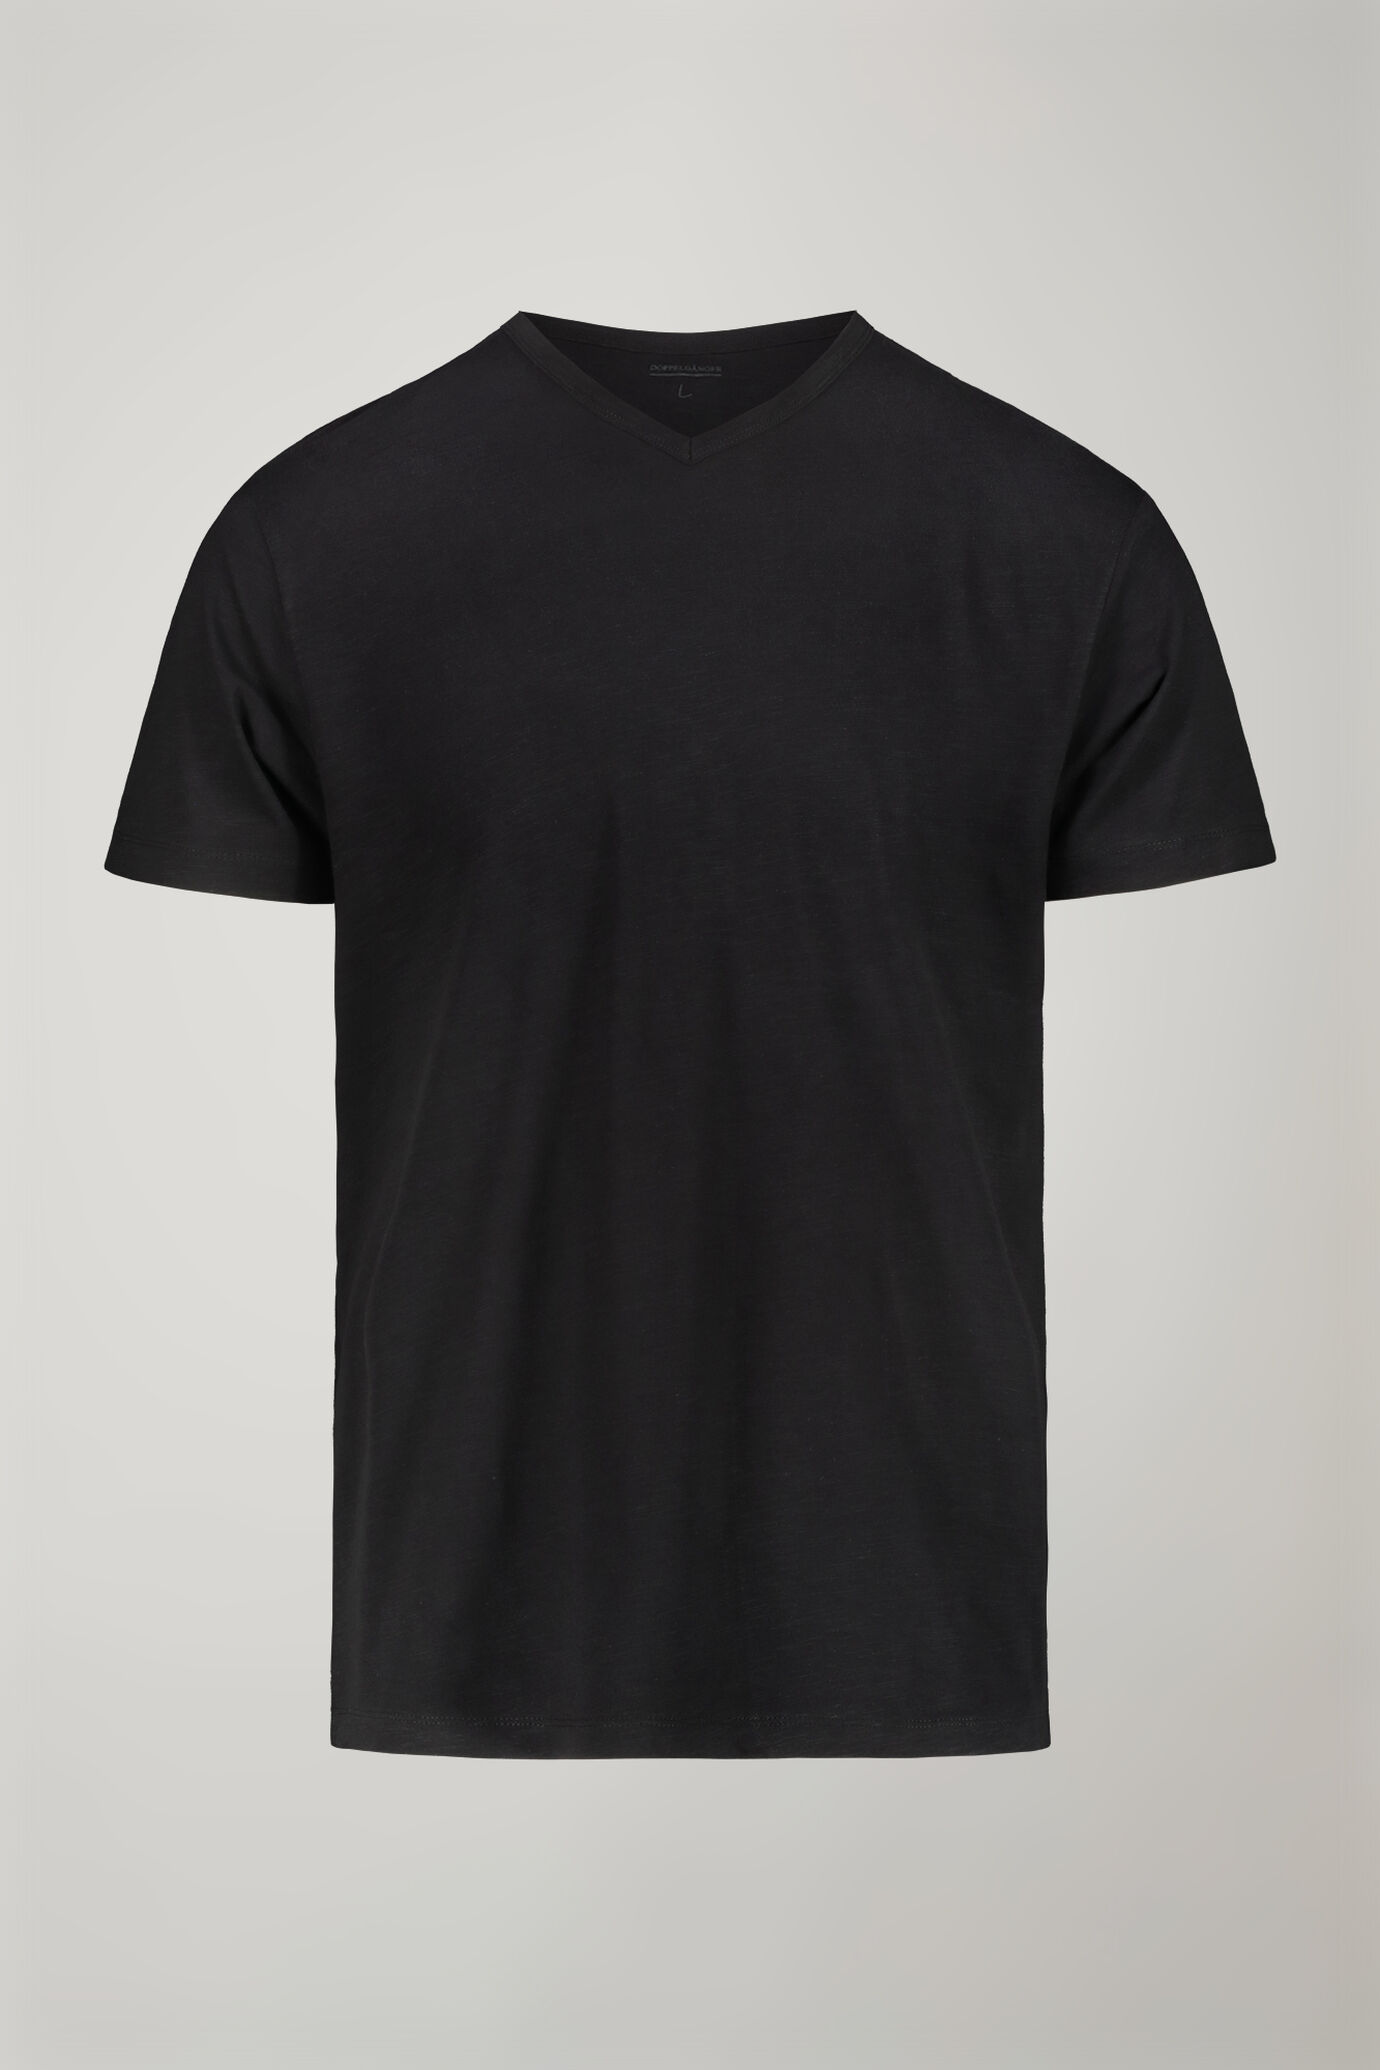 Herren-T-Shirt mit V-Ausschnitt aus 100 % Slub-Baumwolle in normaler Passform image number 4